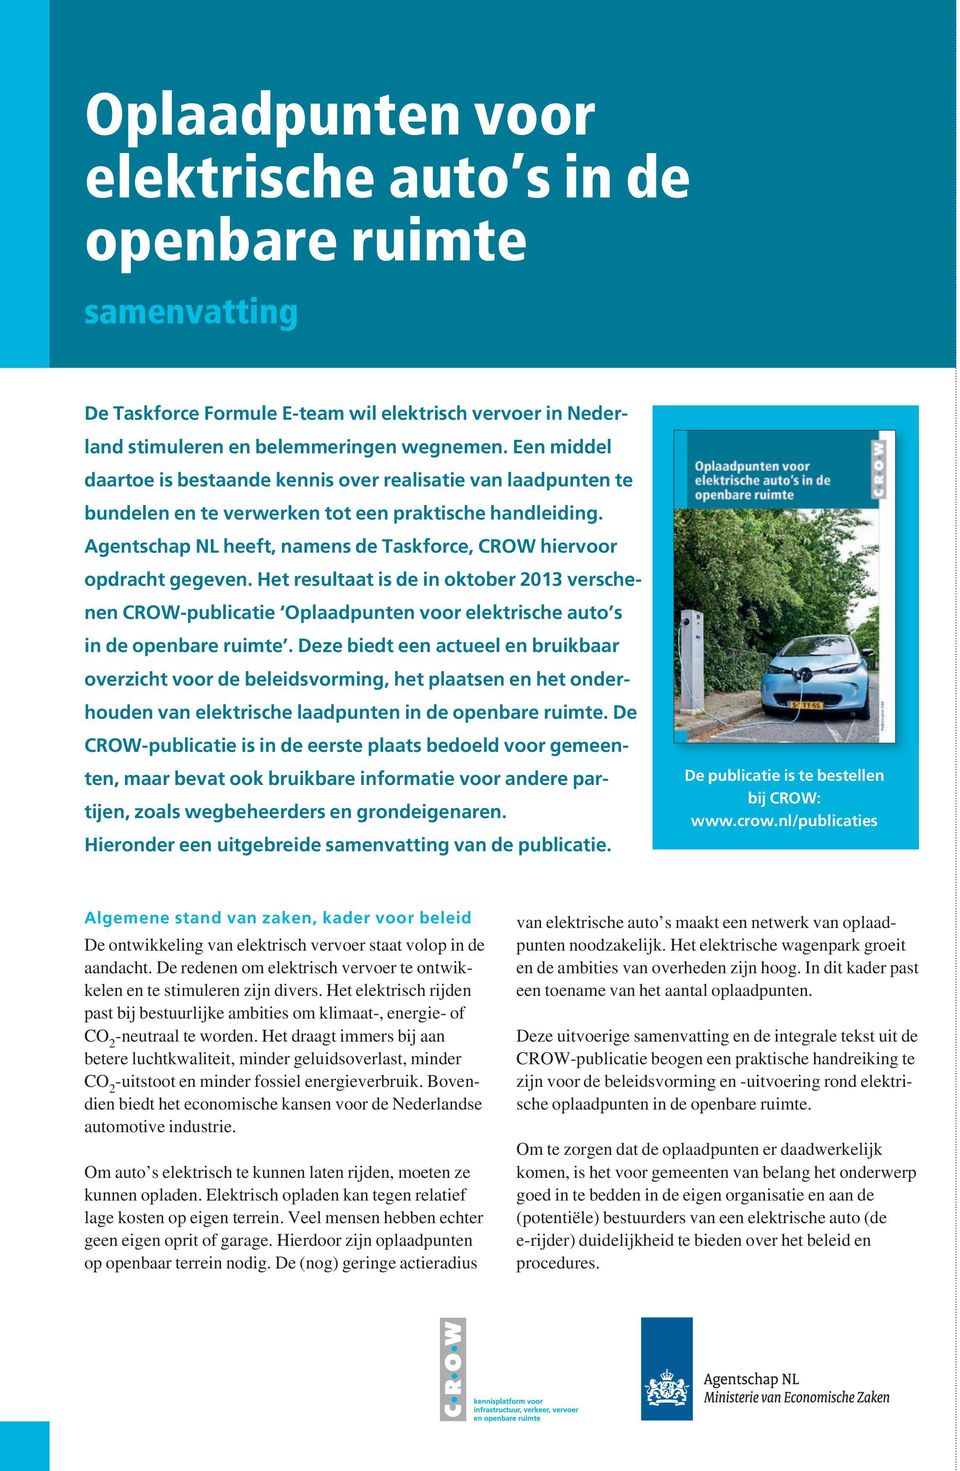 Agentschap NL heeft, namens de Taskforce, CROW hiervoor opdracht gegeven. Het resultaat is de in oktober 2013 verschenen CROW-publicatie Oplaadpunten voor elektrische auto s in de openbare ruimte.